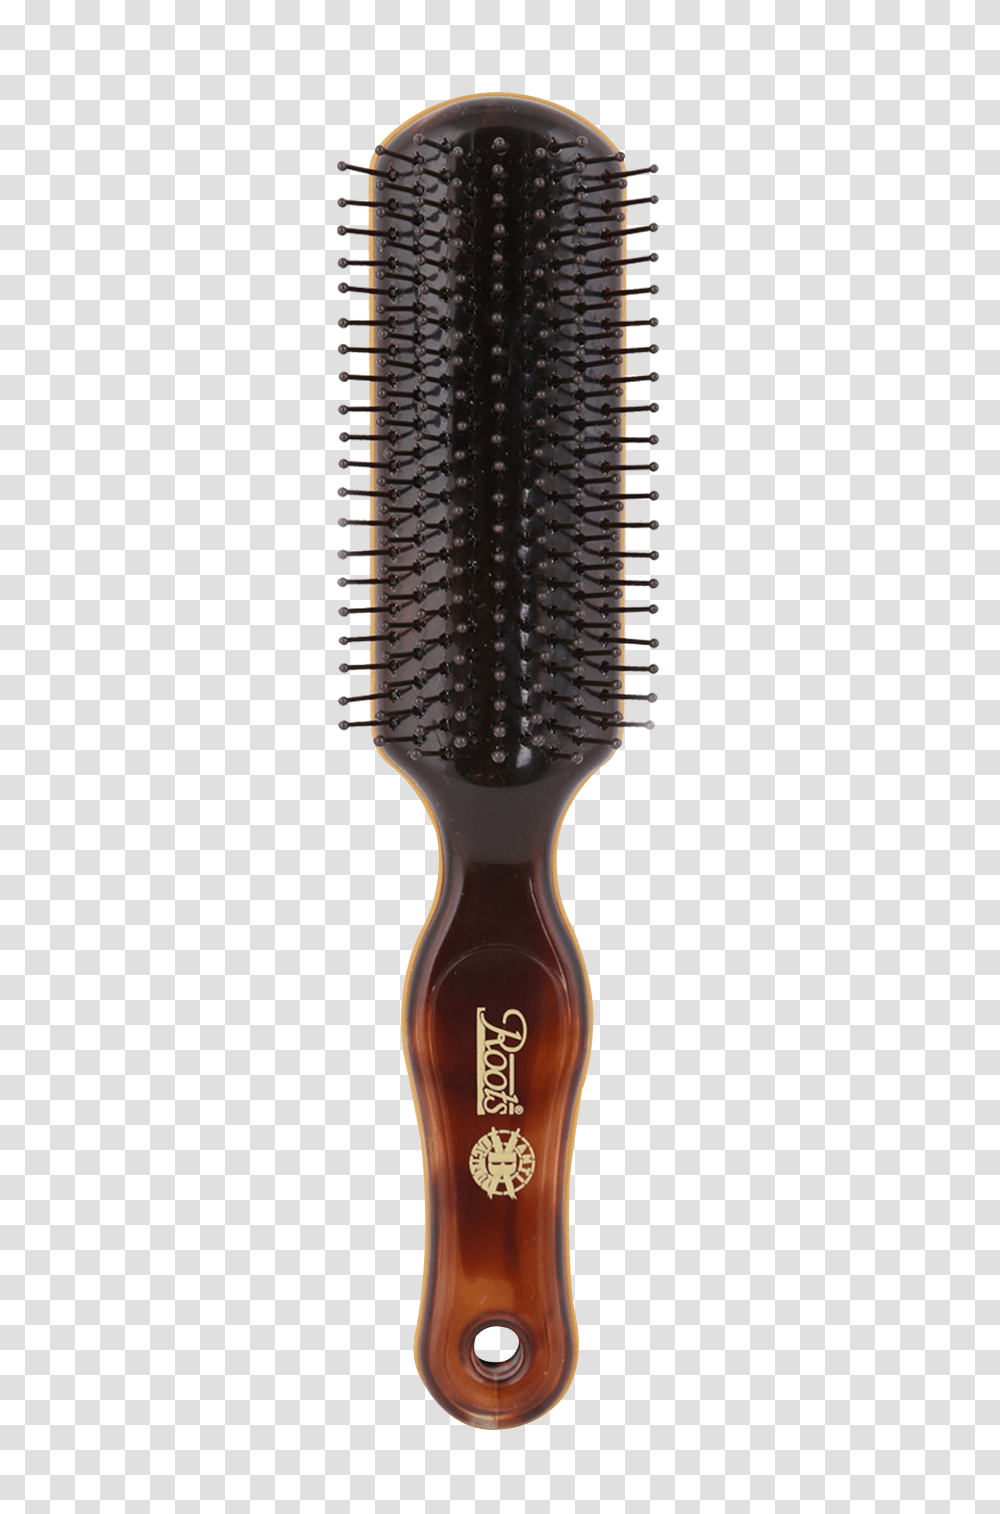 Hair Brush Image, Tool, Toothbrush Transparent Png